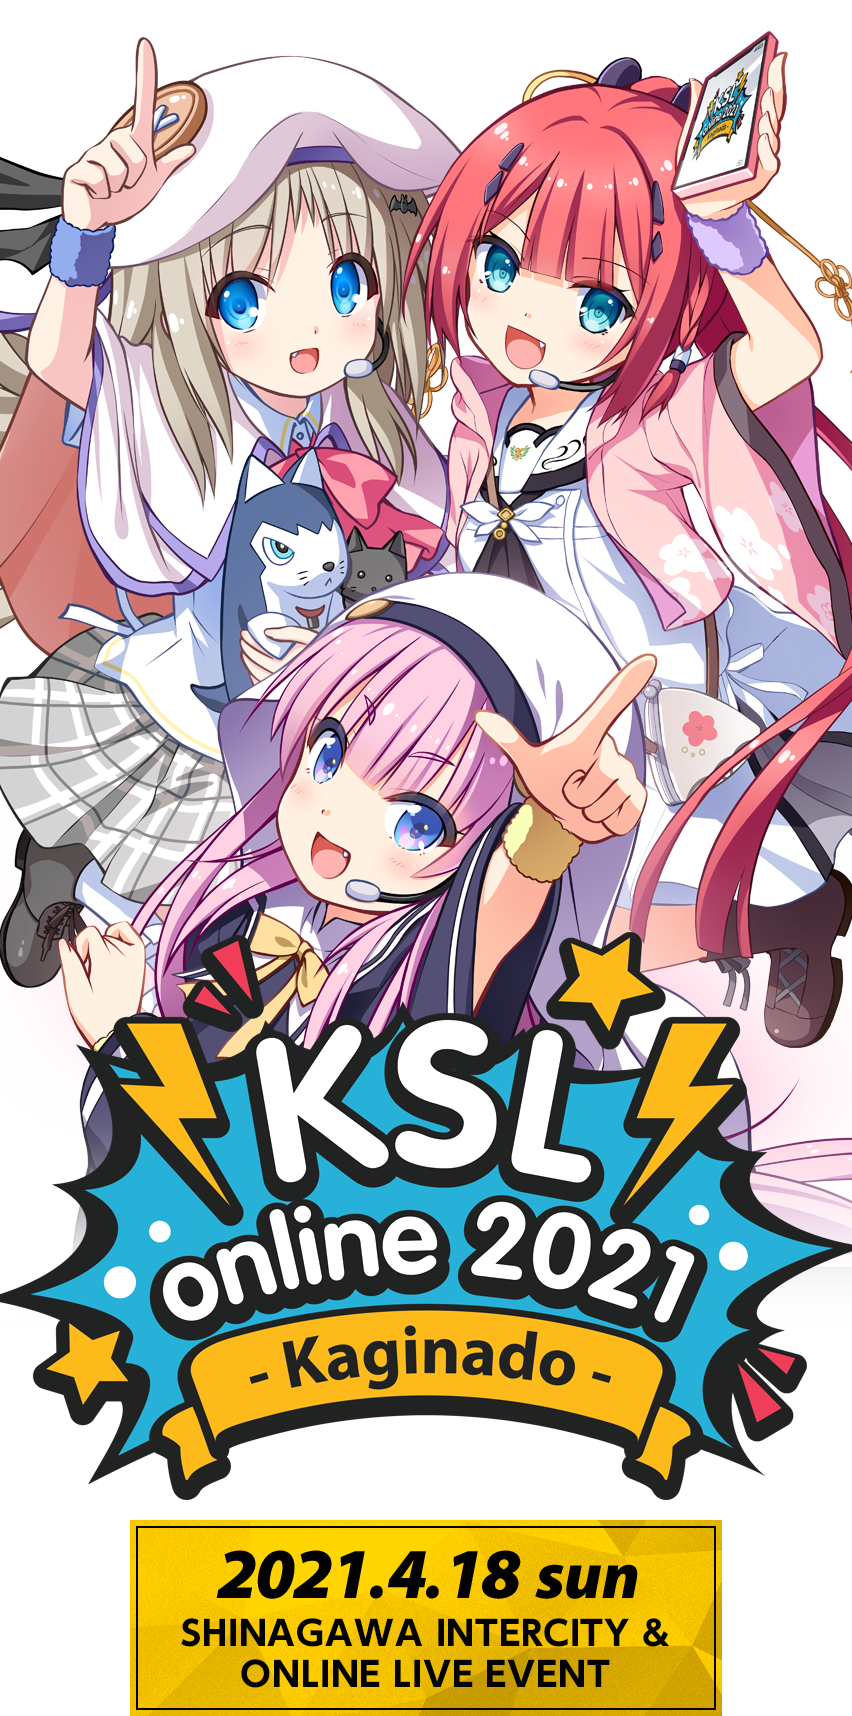 KSL online 2021 ～Kaginado～